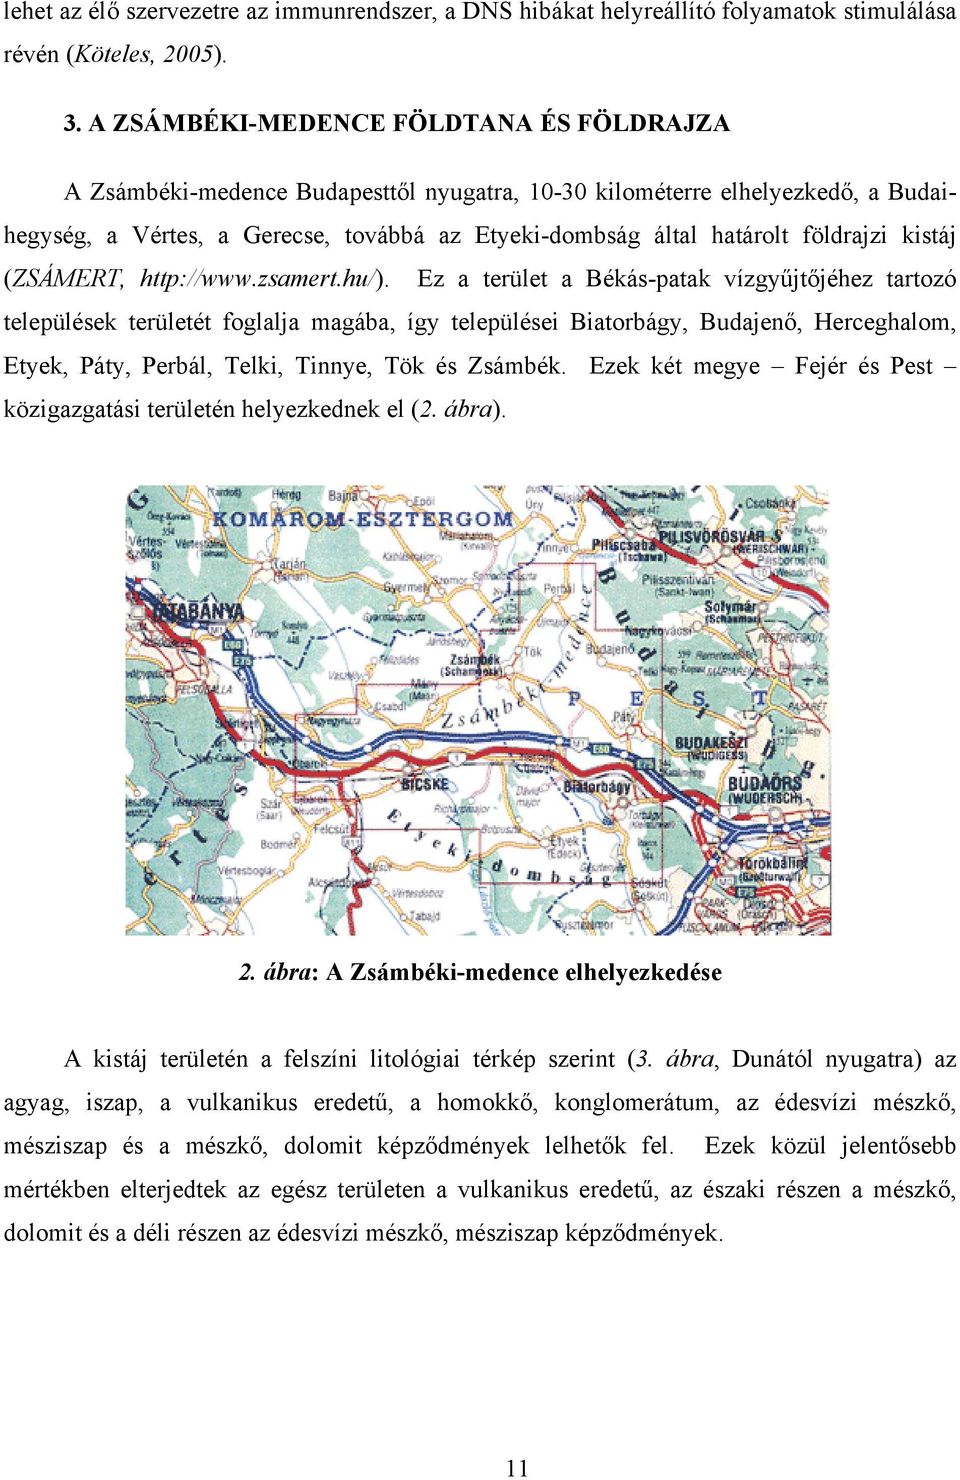 földrajzi kistáj (ZSÁMERT, http://www.zsamert.hu/).